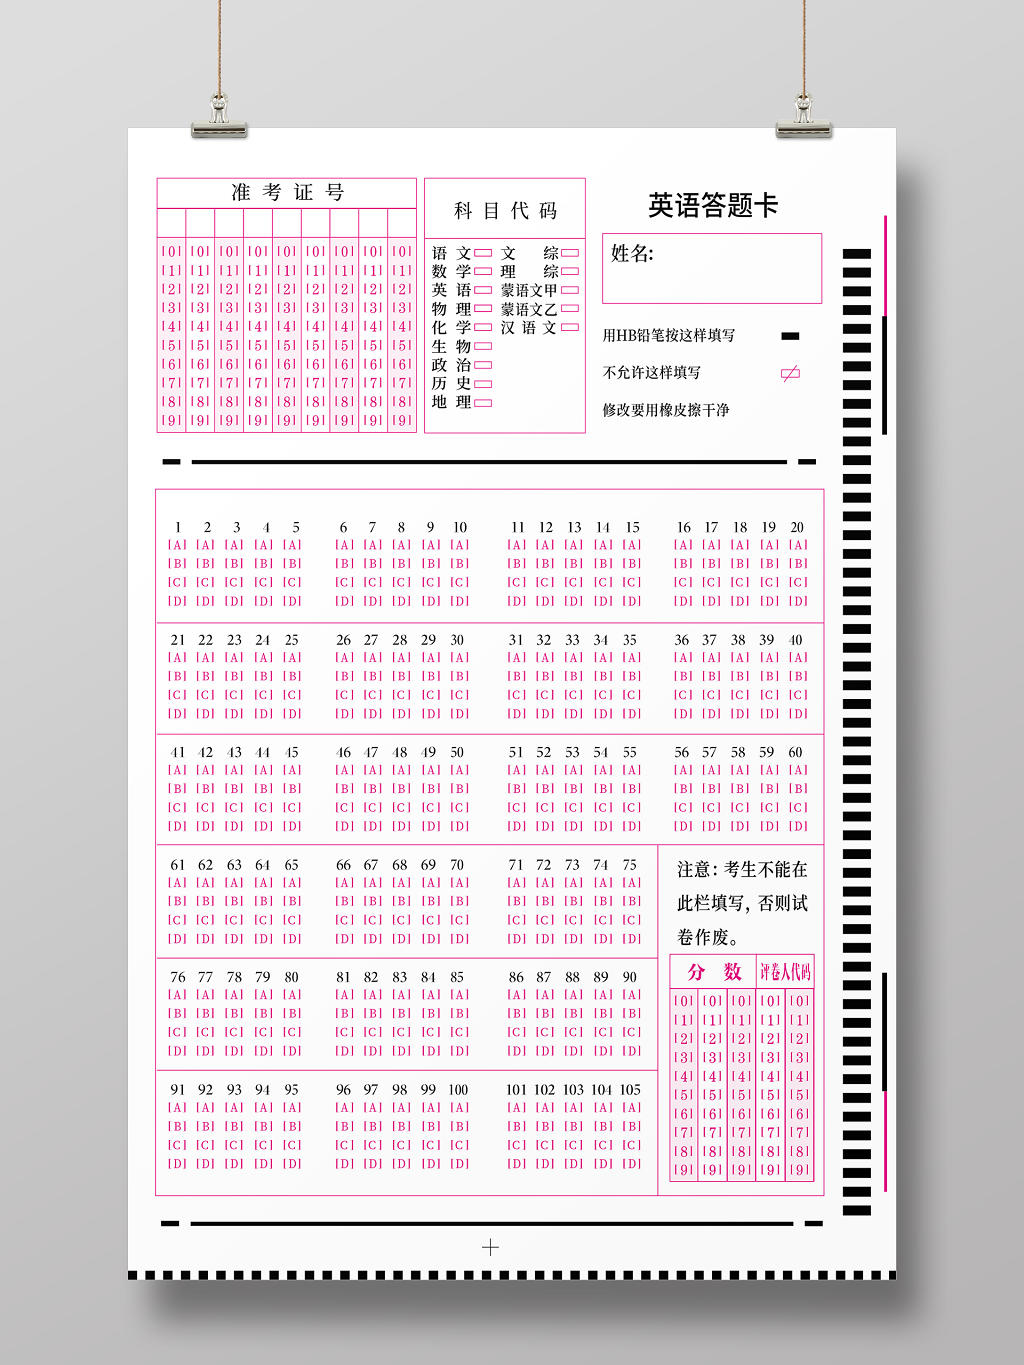 学校考试粉红色机读答题卡设计模板